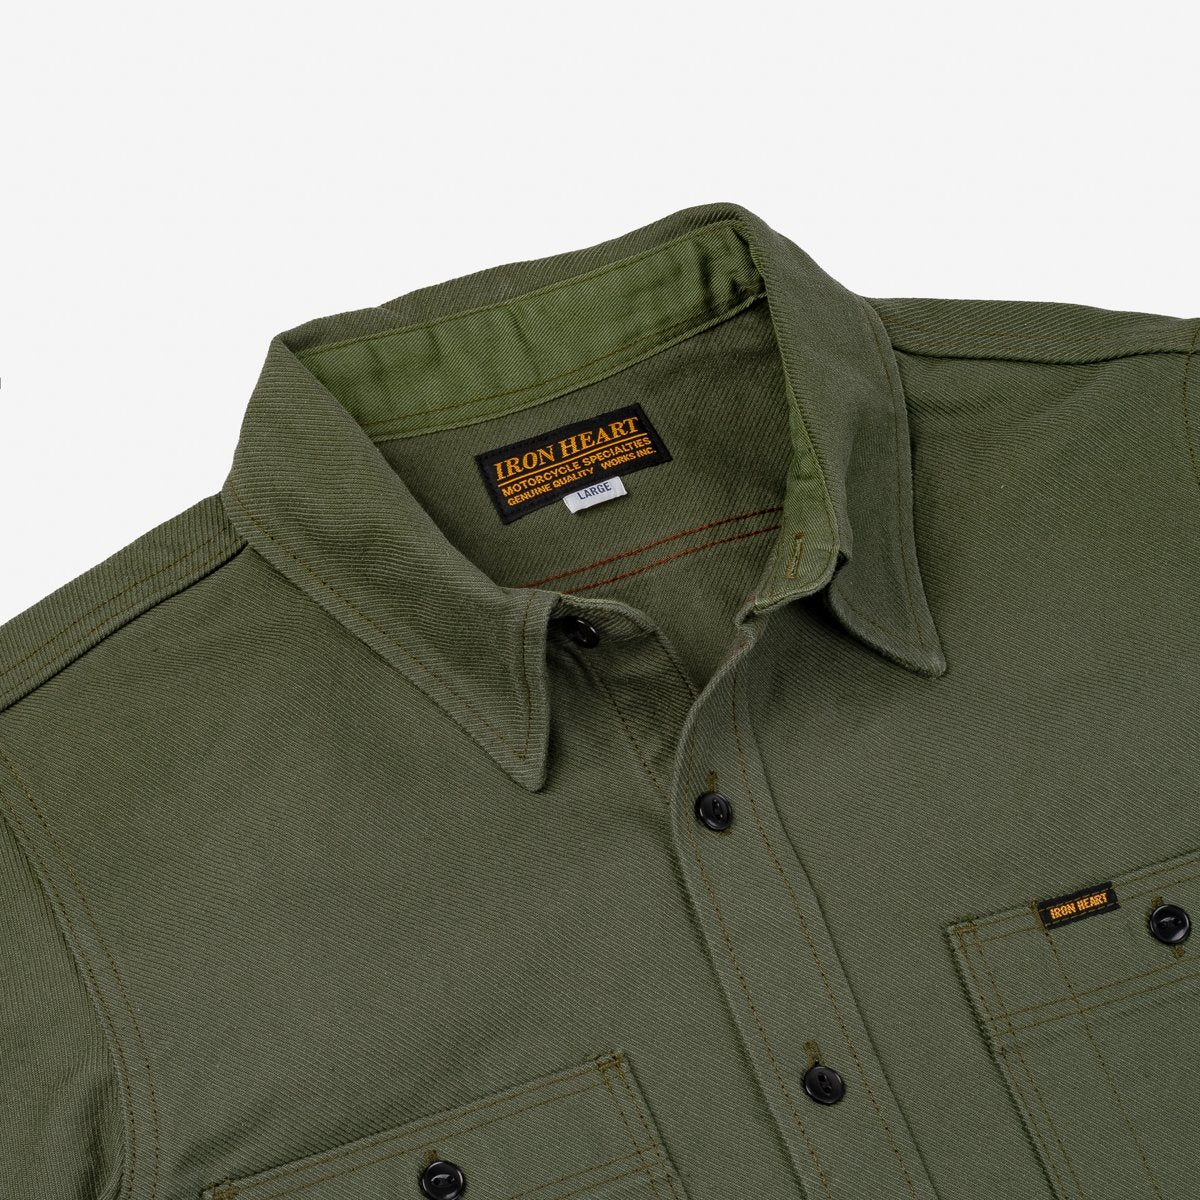 IHSH-307-ODG Military Serge Work Shirt Olive Drab Green